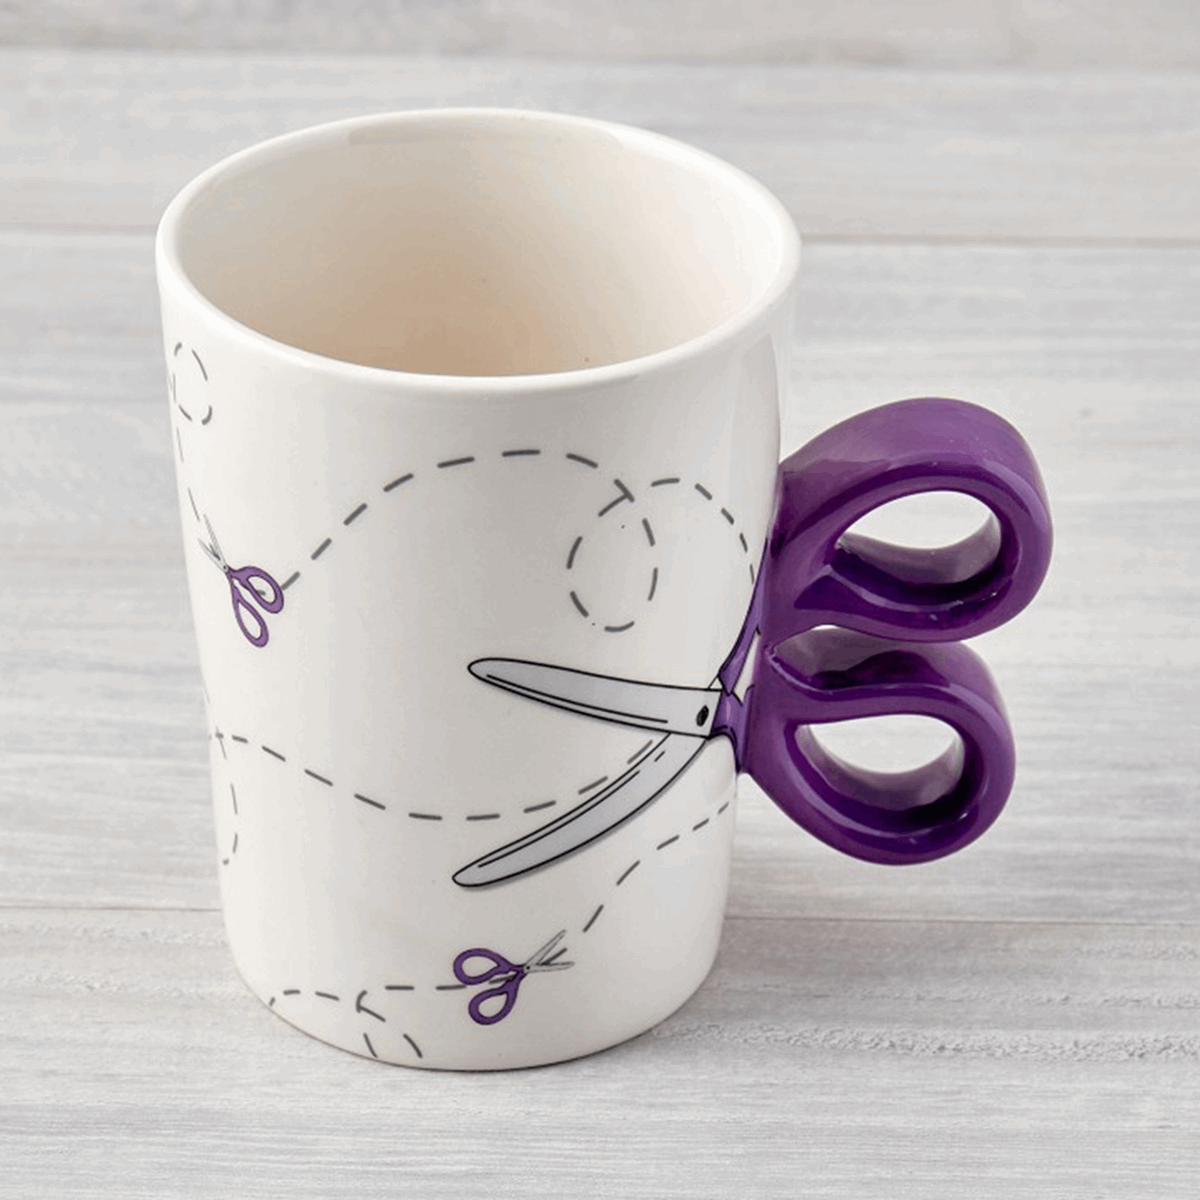 Scissor Ceramic Mug